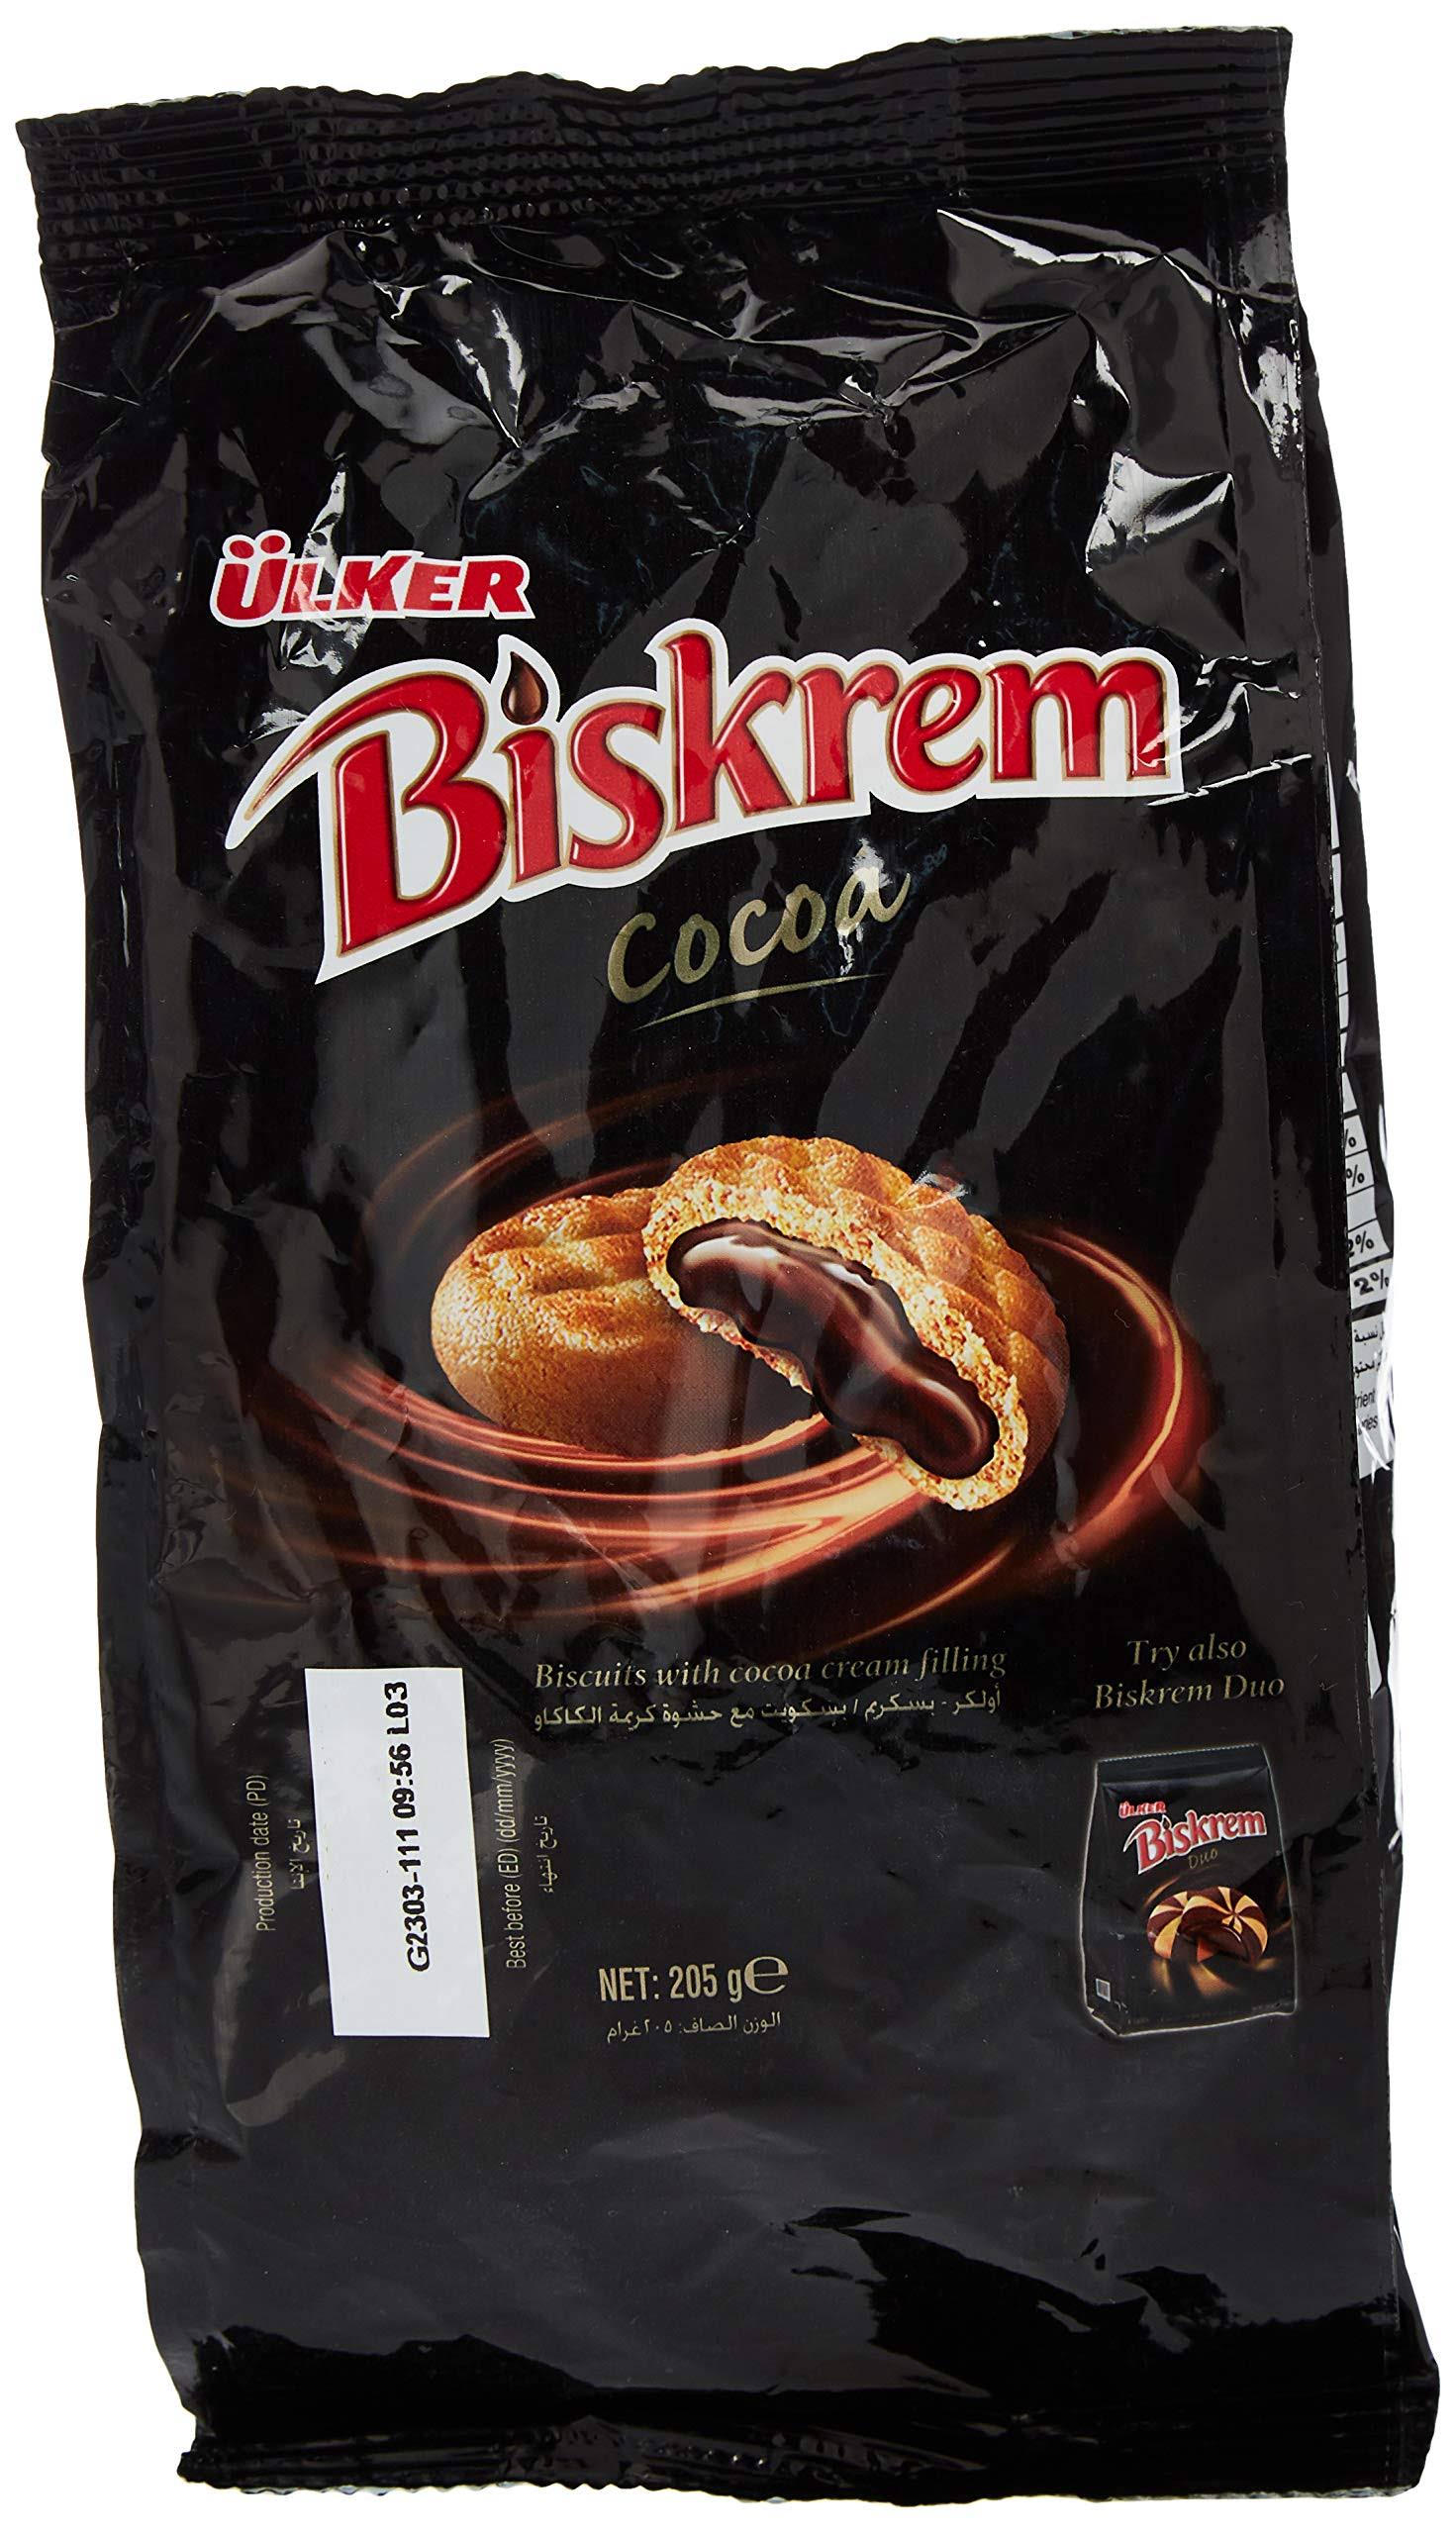 Biskrem Cocoa - 205g